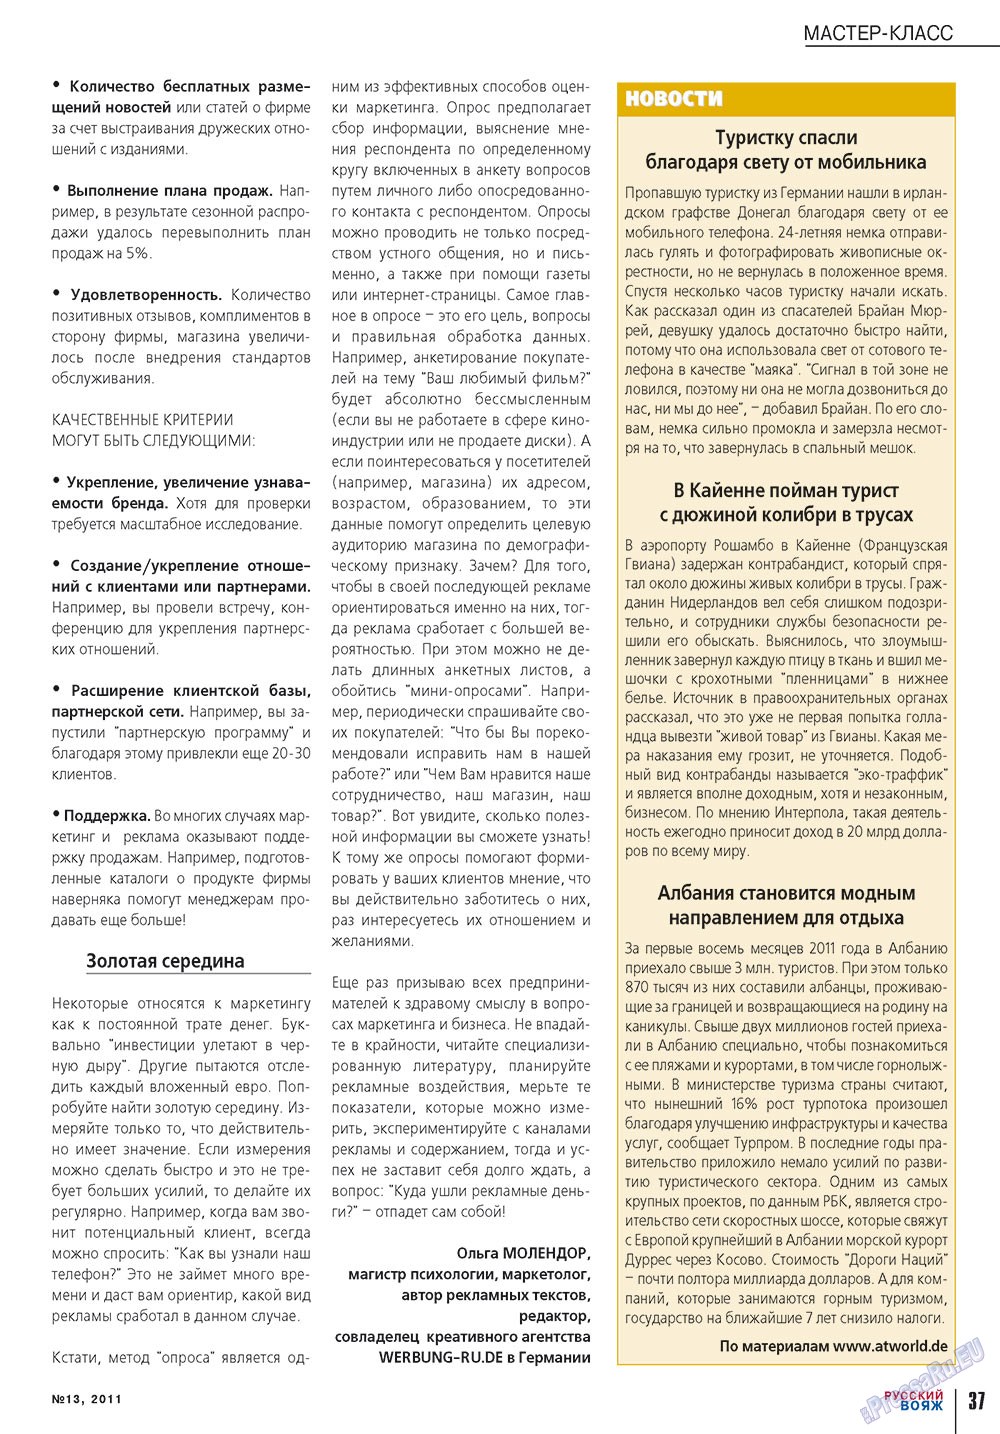 Русский вояж, журнал. 2011 №13 стр.37